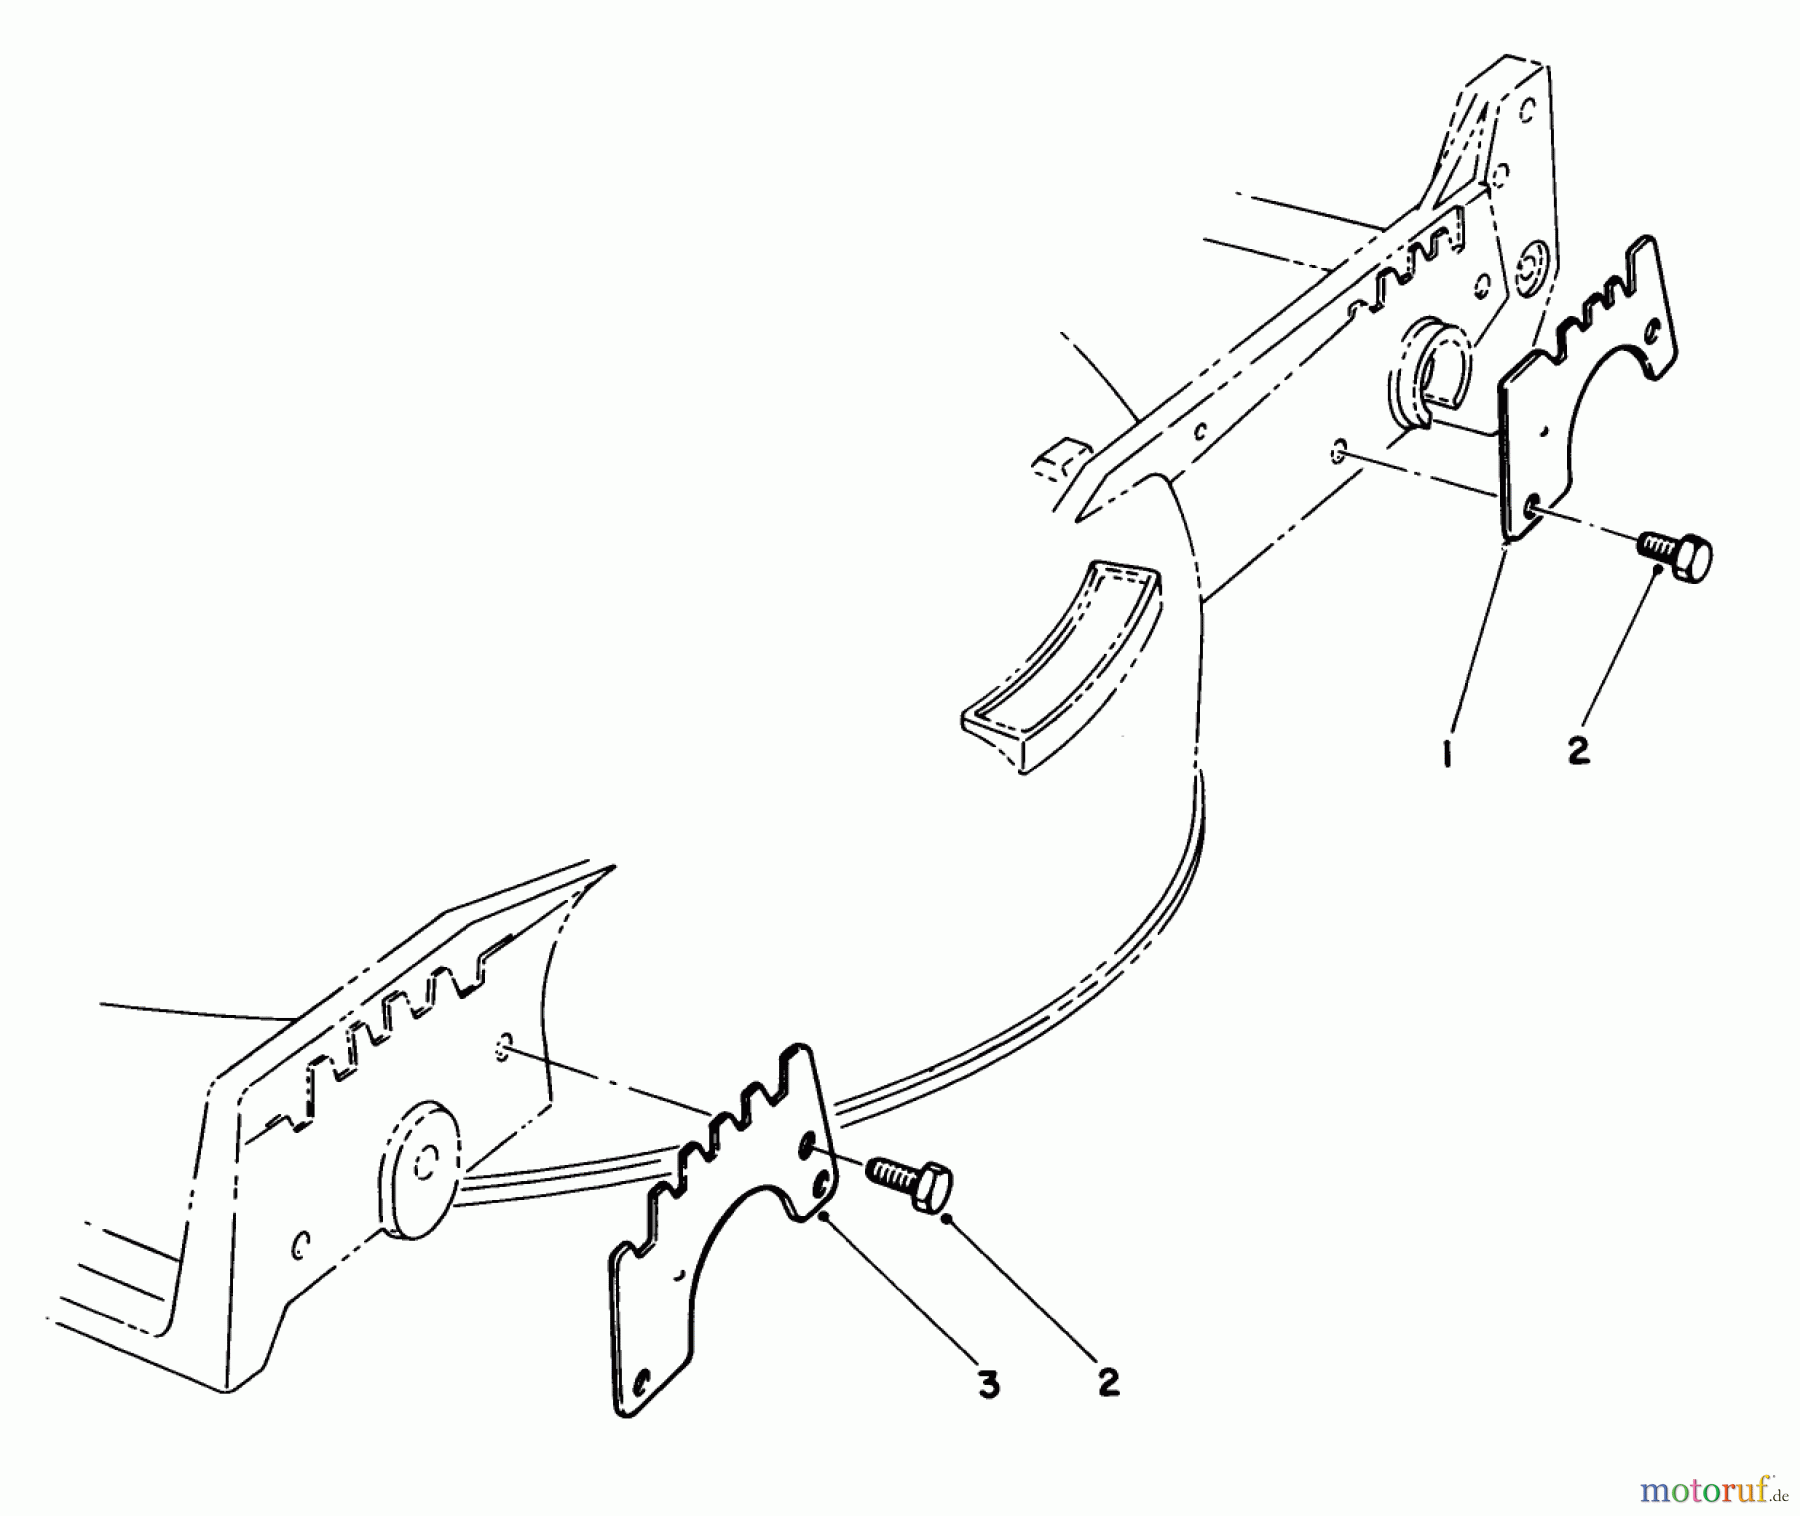  Toro Neu Mowers, Walk-Behind Seite 1 20620 - Toro Lawnmower, 1988 (8000001-8999999) WEAR PLATE KIT NO. 49-4080 (OPTIONAL)